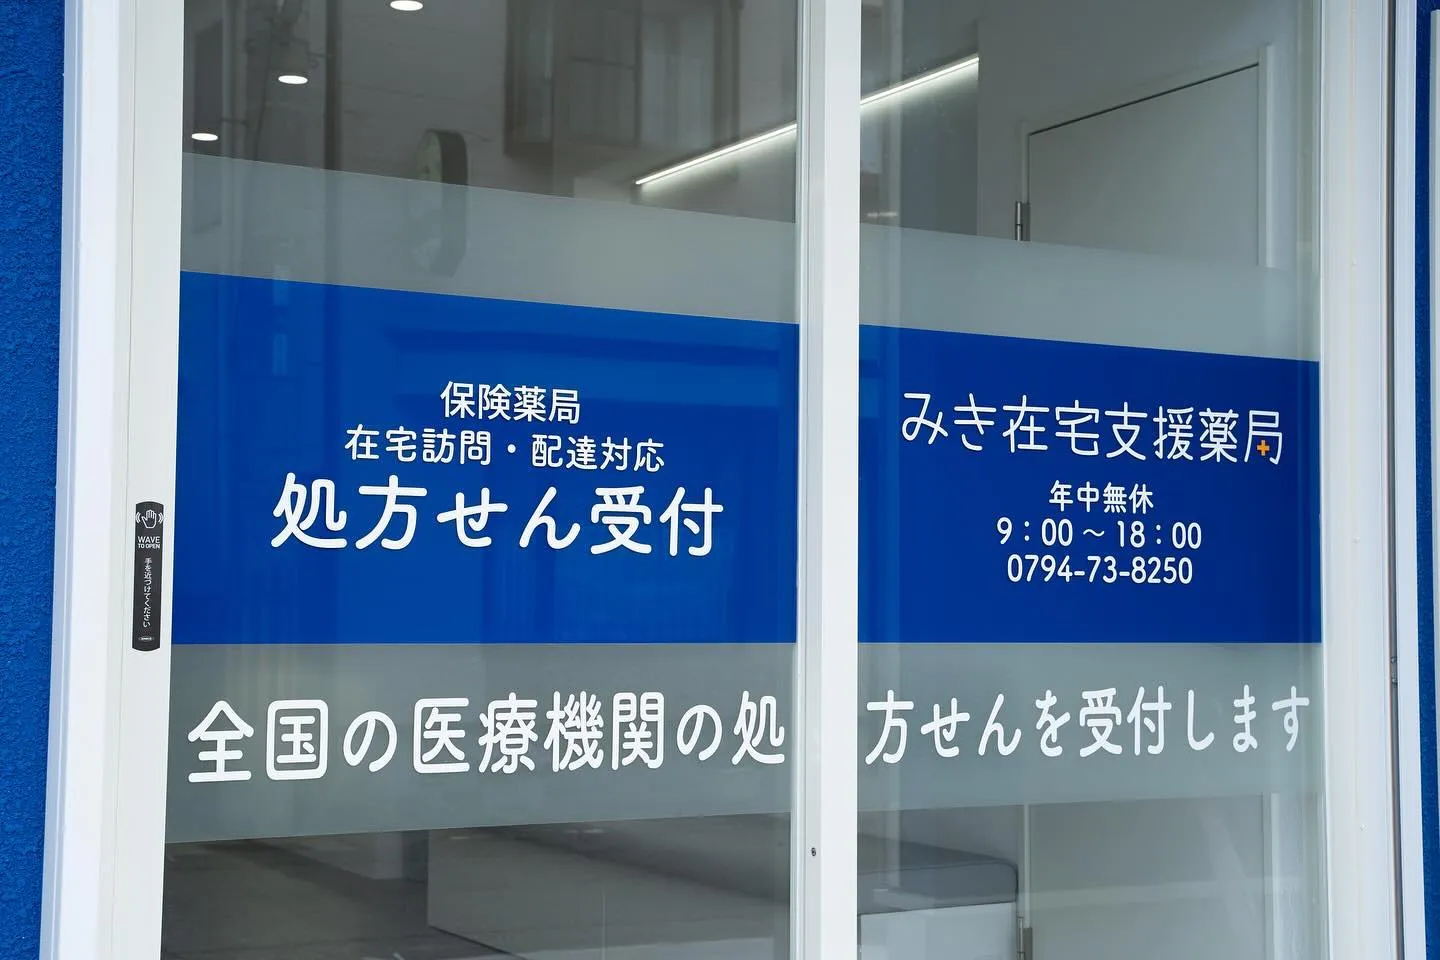 神戸と三木にある薬局の新店舗オープンのお知らせです。